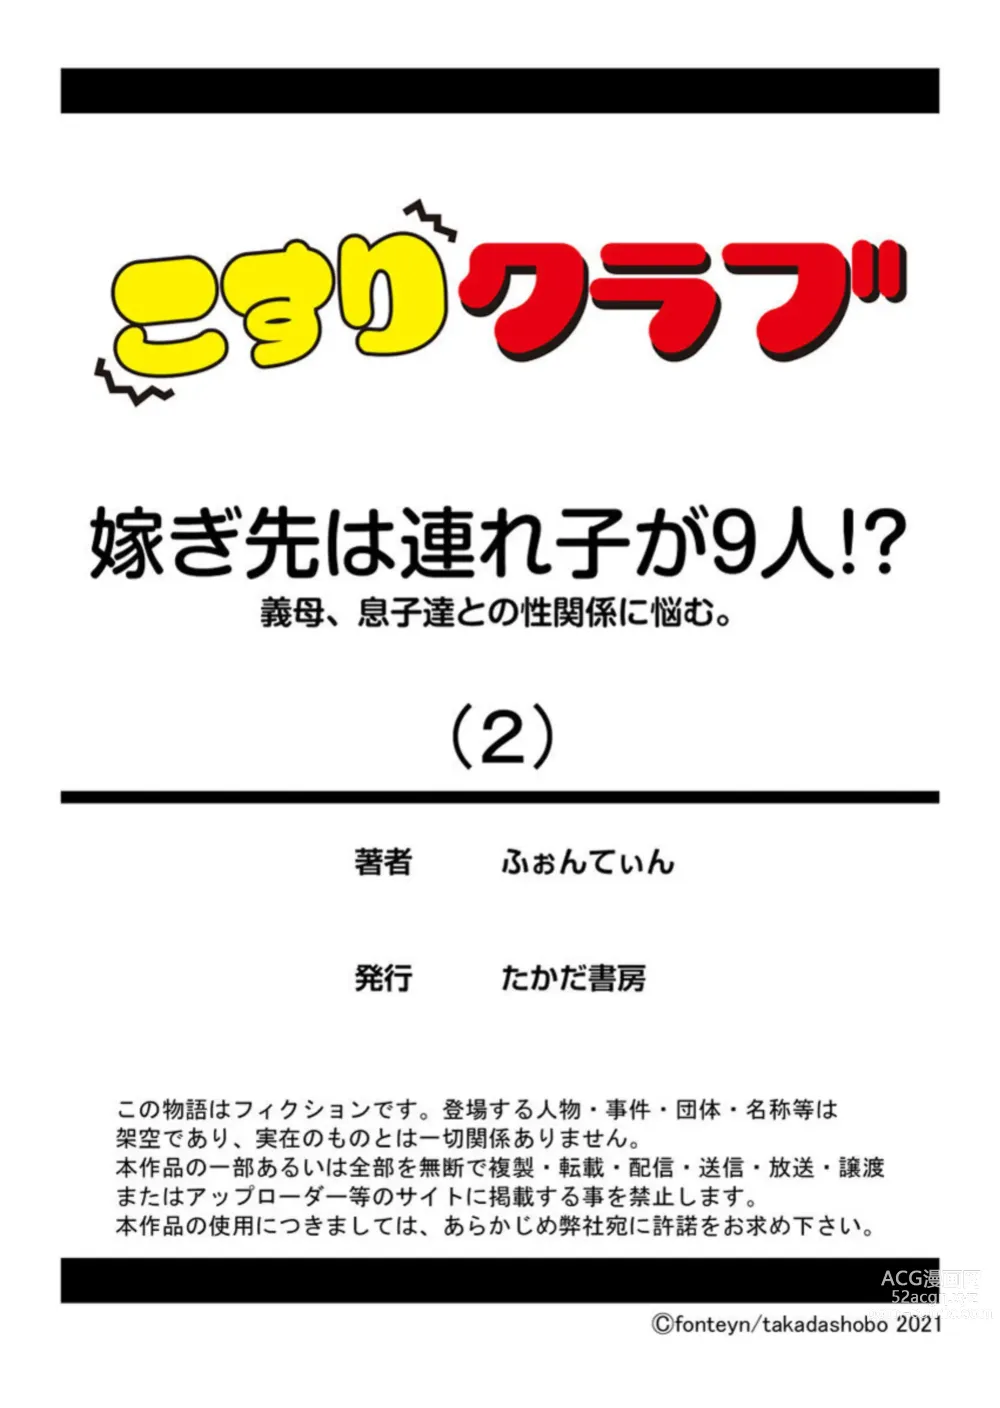 Page 27 of manga Totsugisaki wa Tsureko ga 9 nin!? Gibo, Musukotachi to no sei Kankei ni Nayamu 2